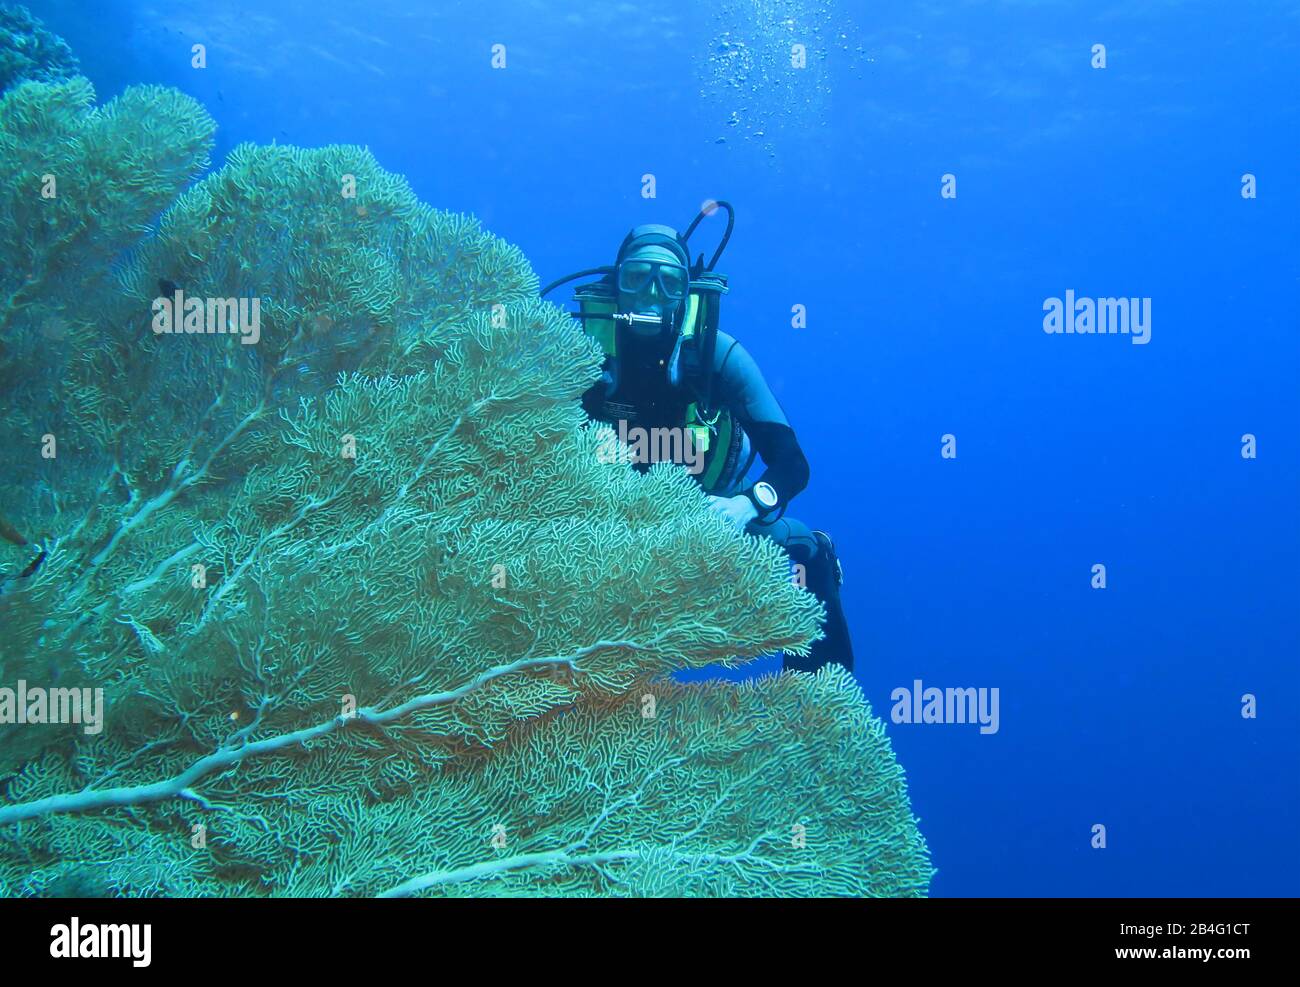 Taucher, Gorgonienkoralle (Octocorallia), Brother Islands, Rotes Meer, Aegypten / Ägypten Stock Photo